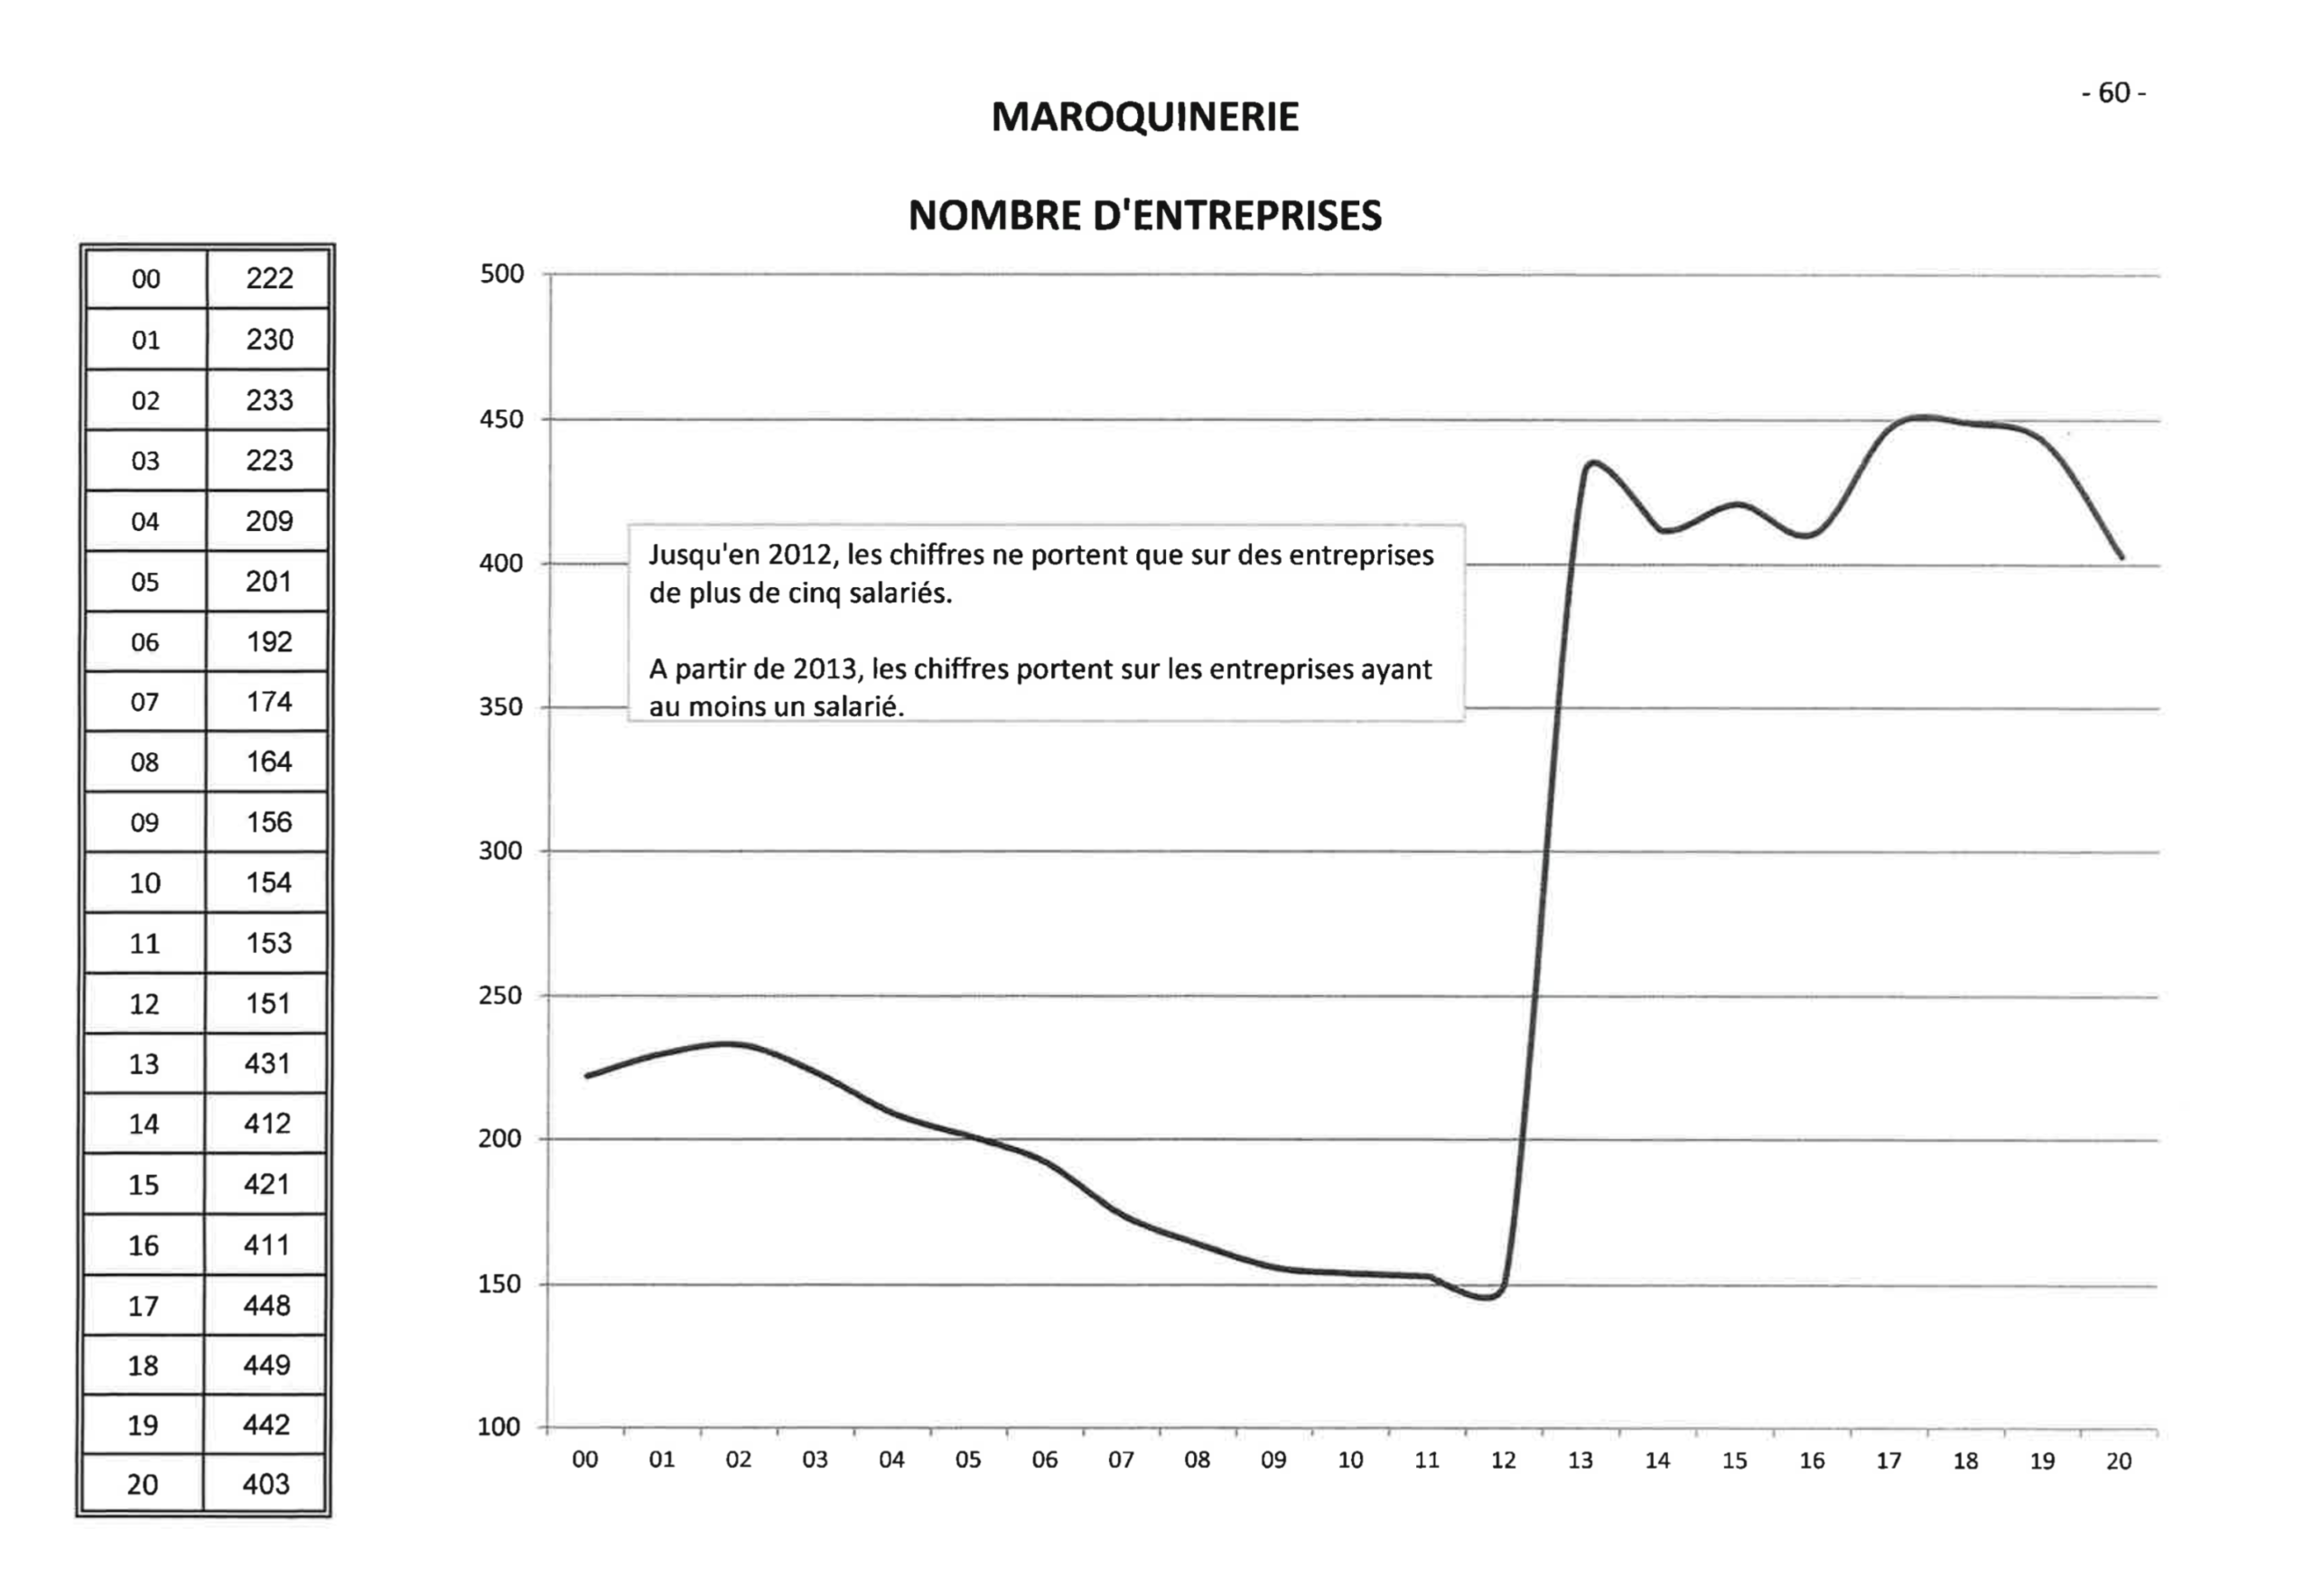 Le nombre d’entreprises dans le secteur de la maroquinerie de 2000 à 2020. La manipulation statistique saute aux yeux. (Source : CNC)